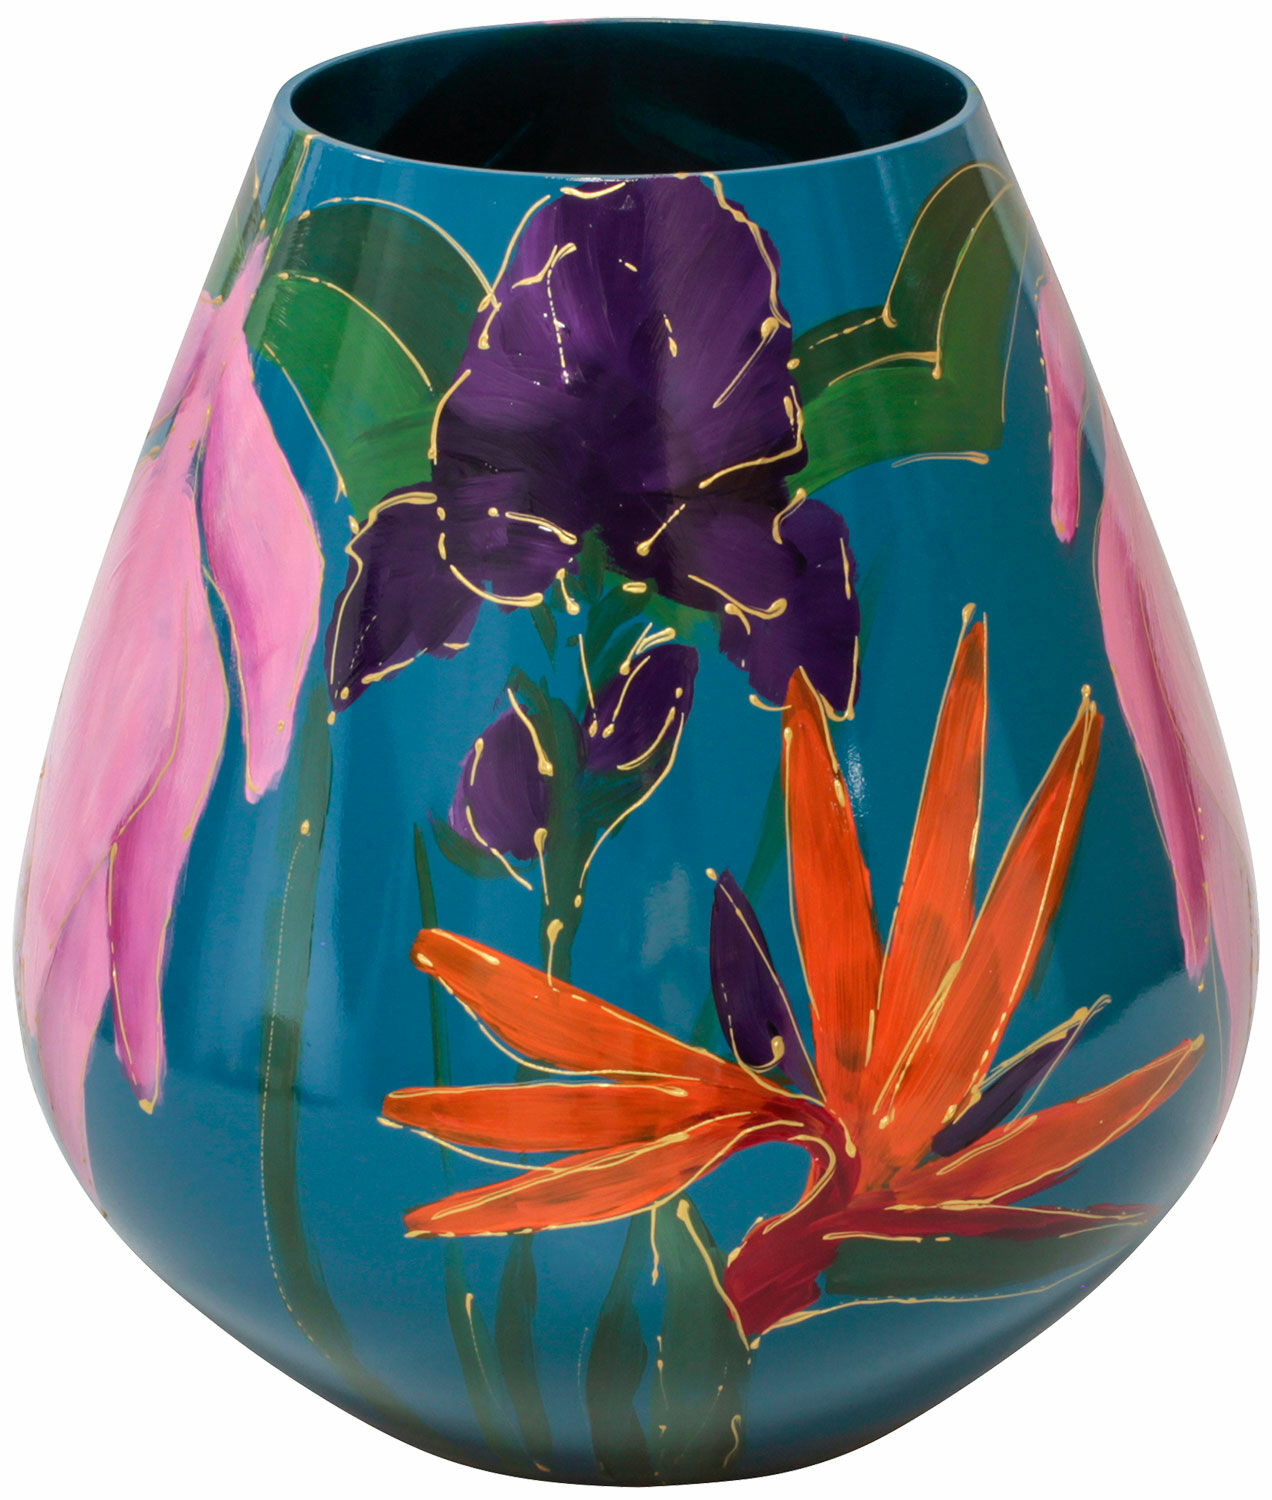 Glass vase "Pink Dream" by Milou van Schaik Martinet